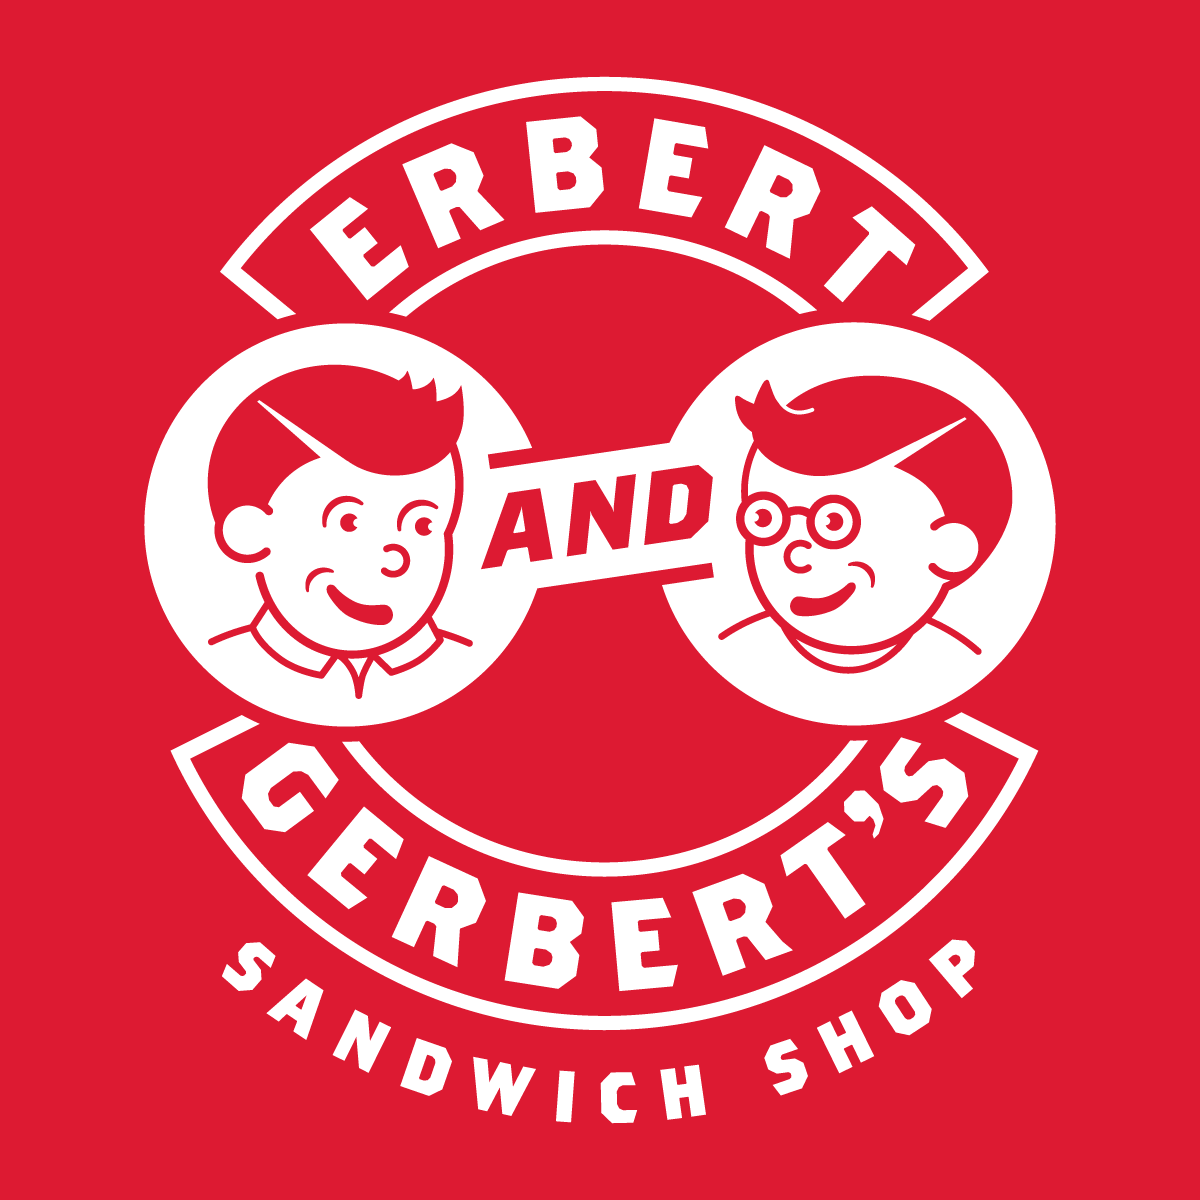 Erbert and Gerbert’s Sandwich Shop